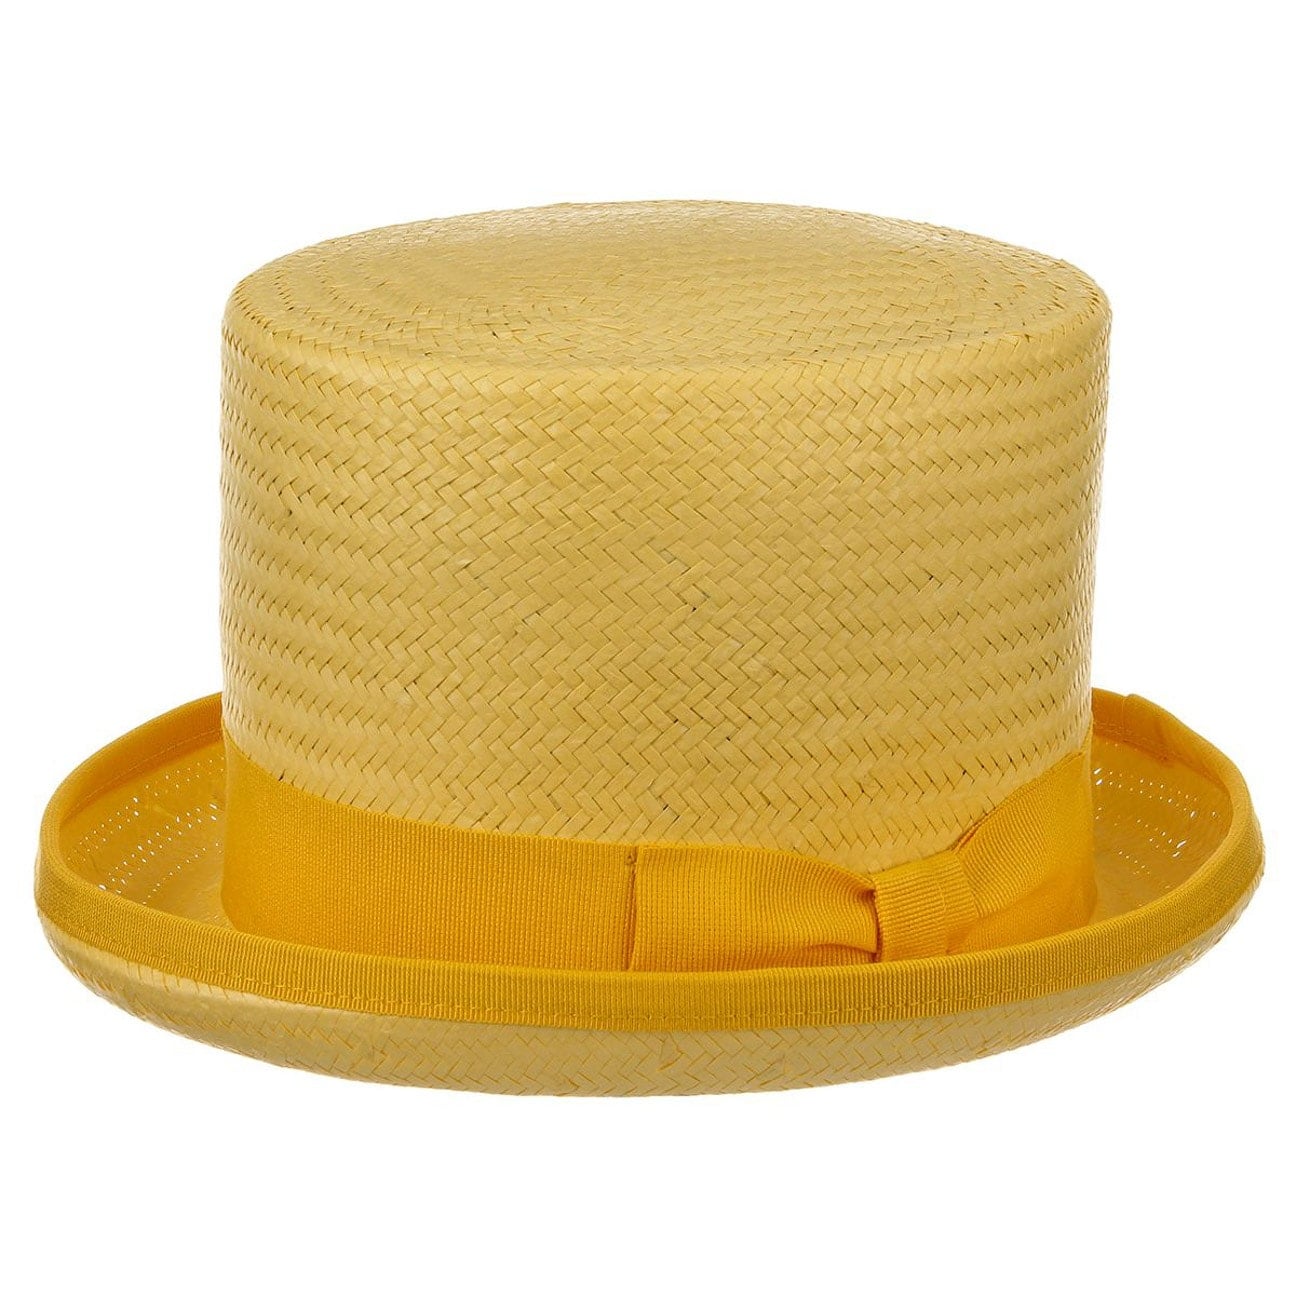 sombrero de dama sombrero de paja topper de paja 50% de descuento en la venta sombrero de maddy sombrero de mujer sombrero de copa asimétrico Sombrero de copa Accesorios Sombreros y gorras Sombreros de vestir Sombreros de copa 